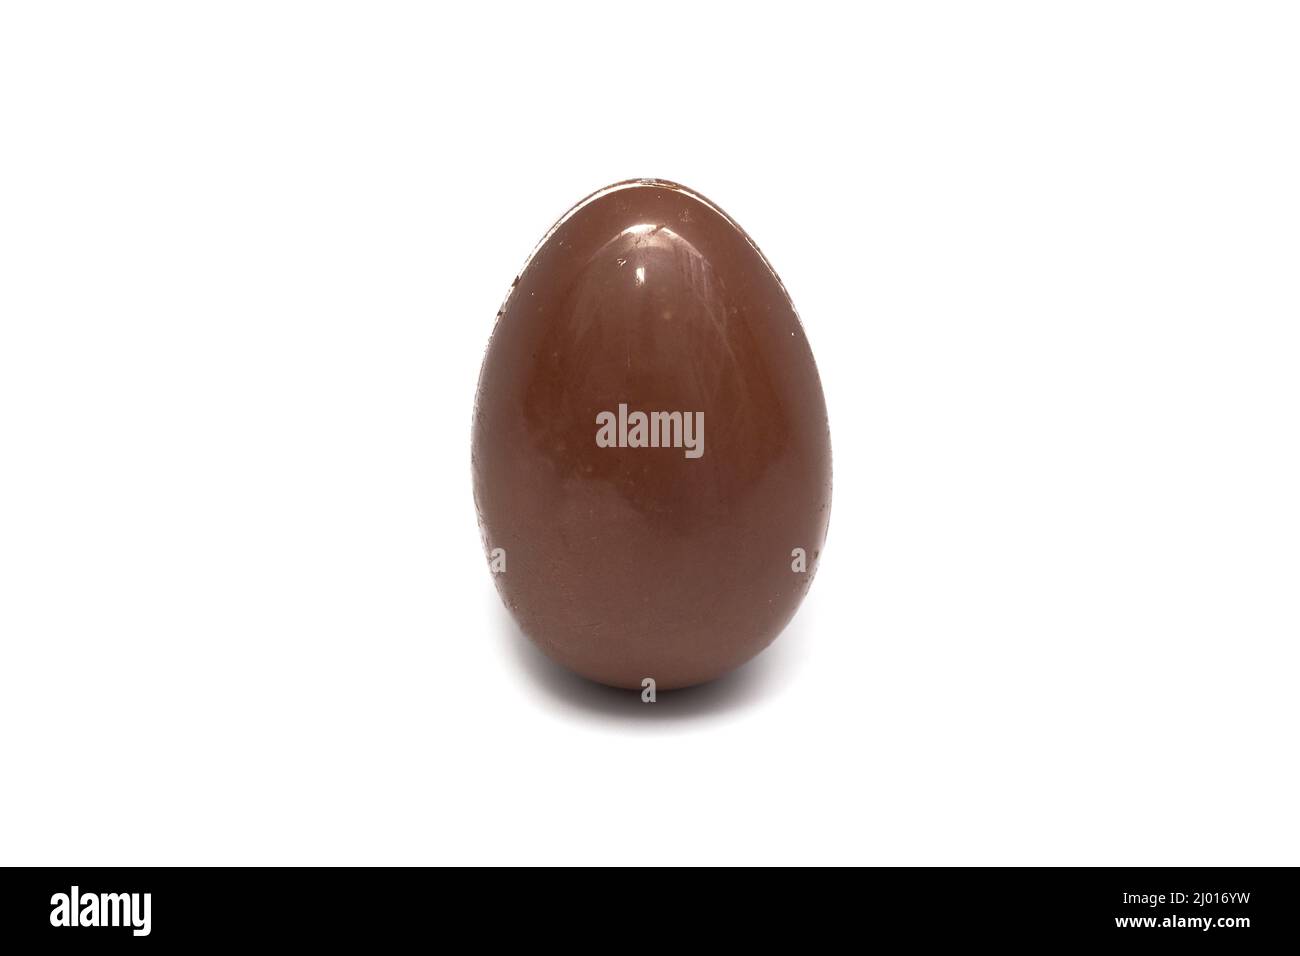 Il prodotto Kinder Surprise è costituito da un uovo di cioccolato, con uno strato interno di cioccolato bianco, che contiene una capsula di plastica con una sorpresa. Foto Stock